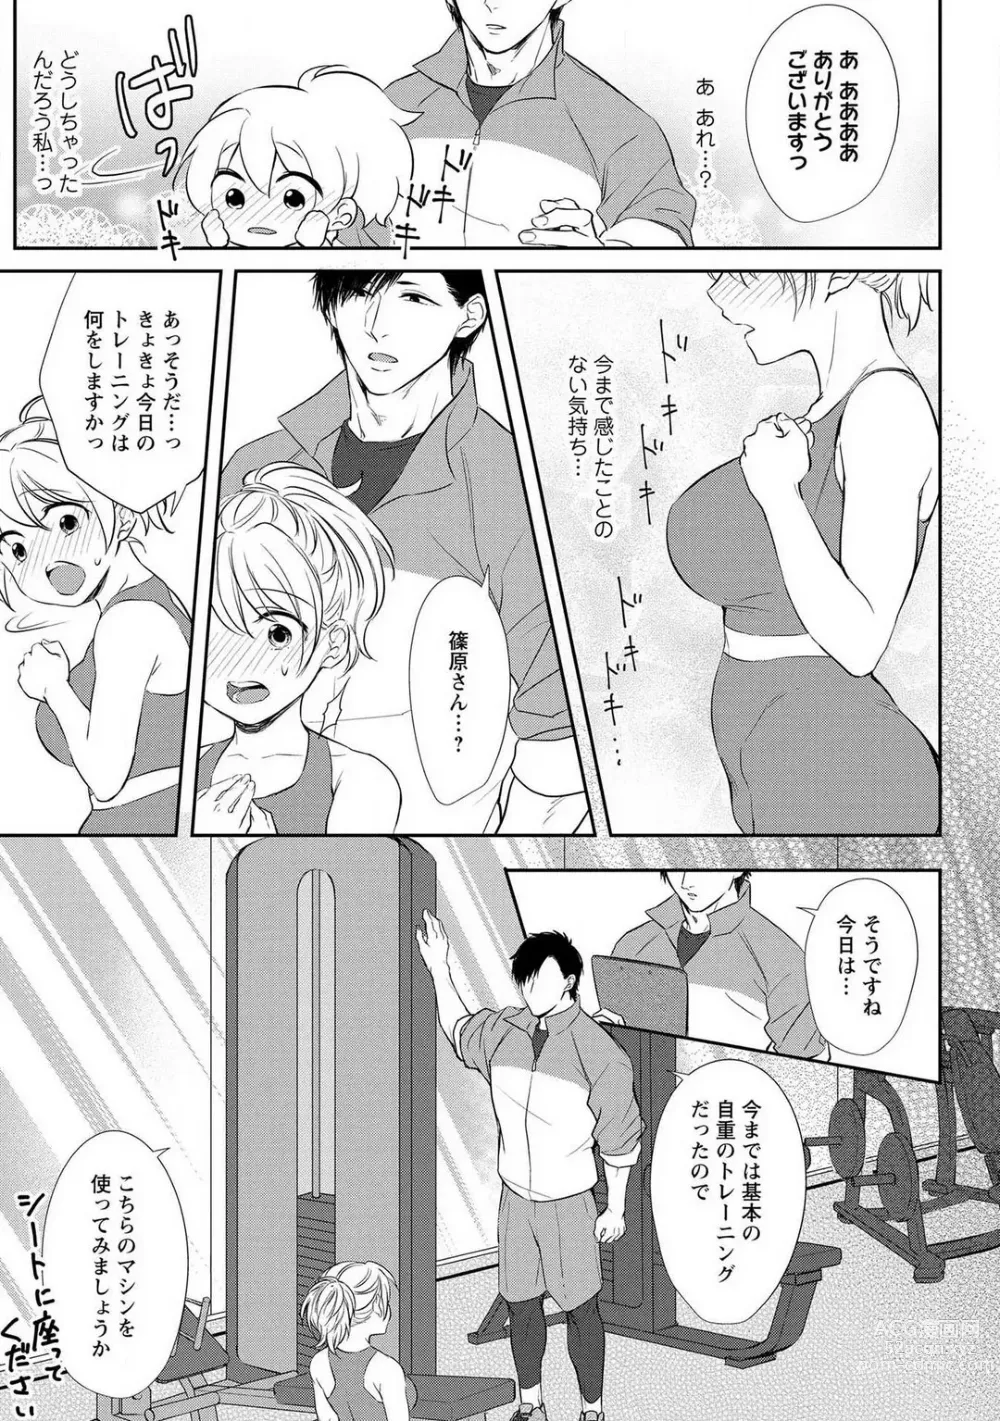 Page 18 of manga Pyuuru